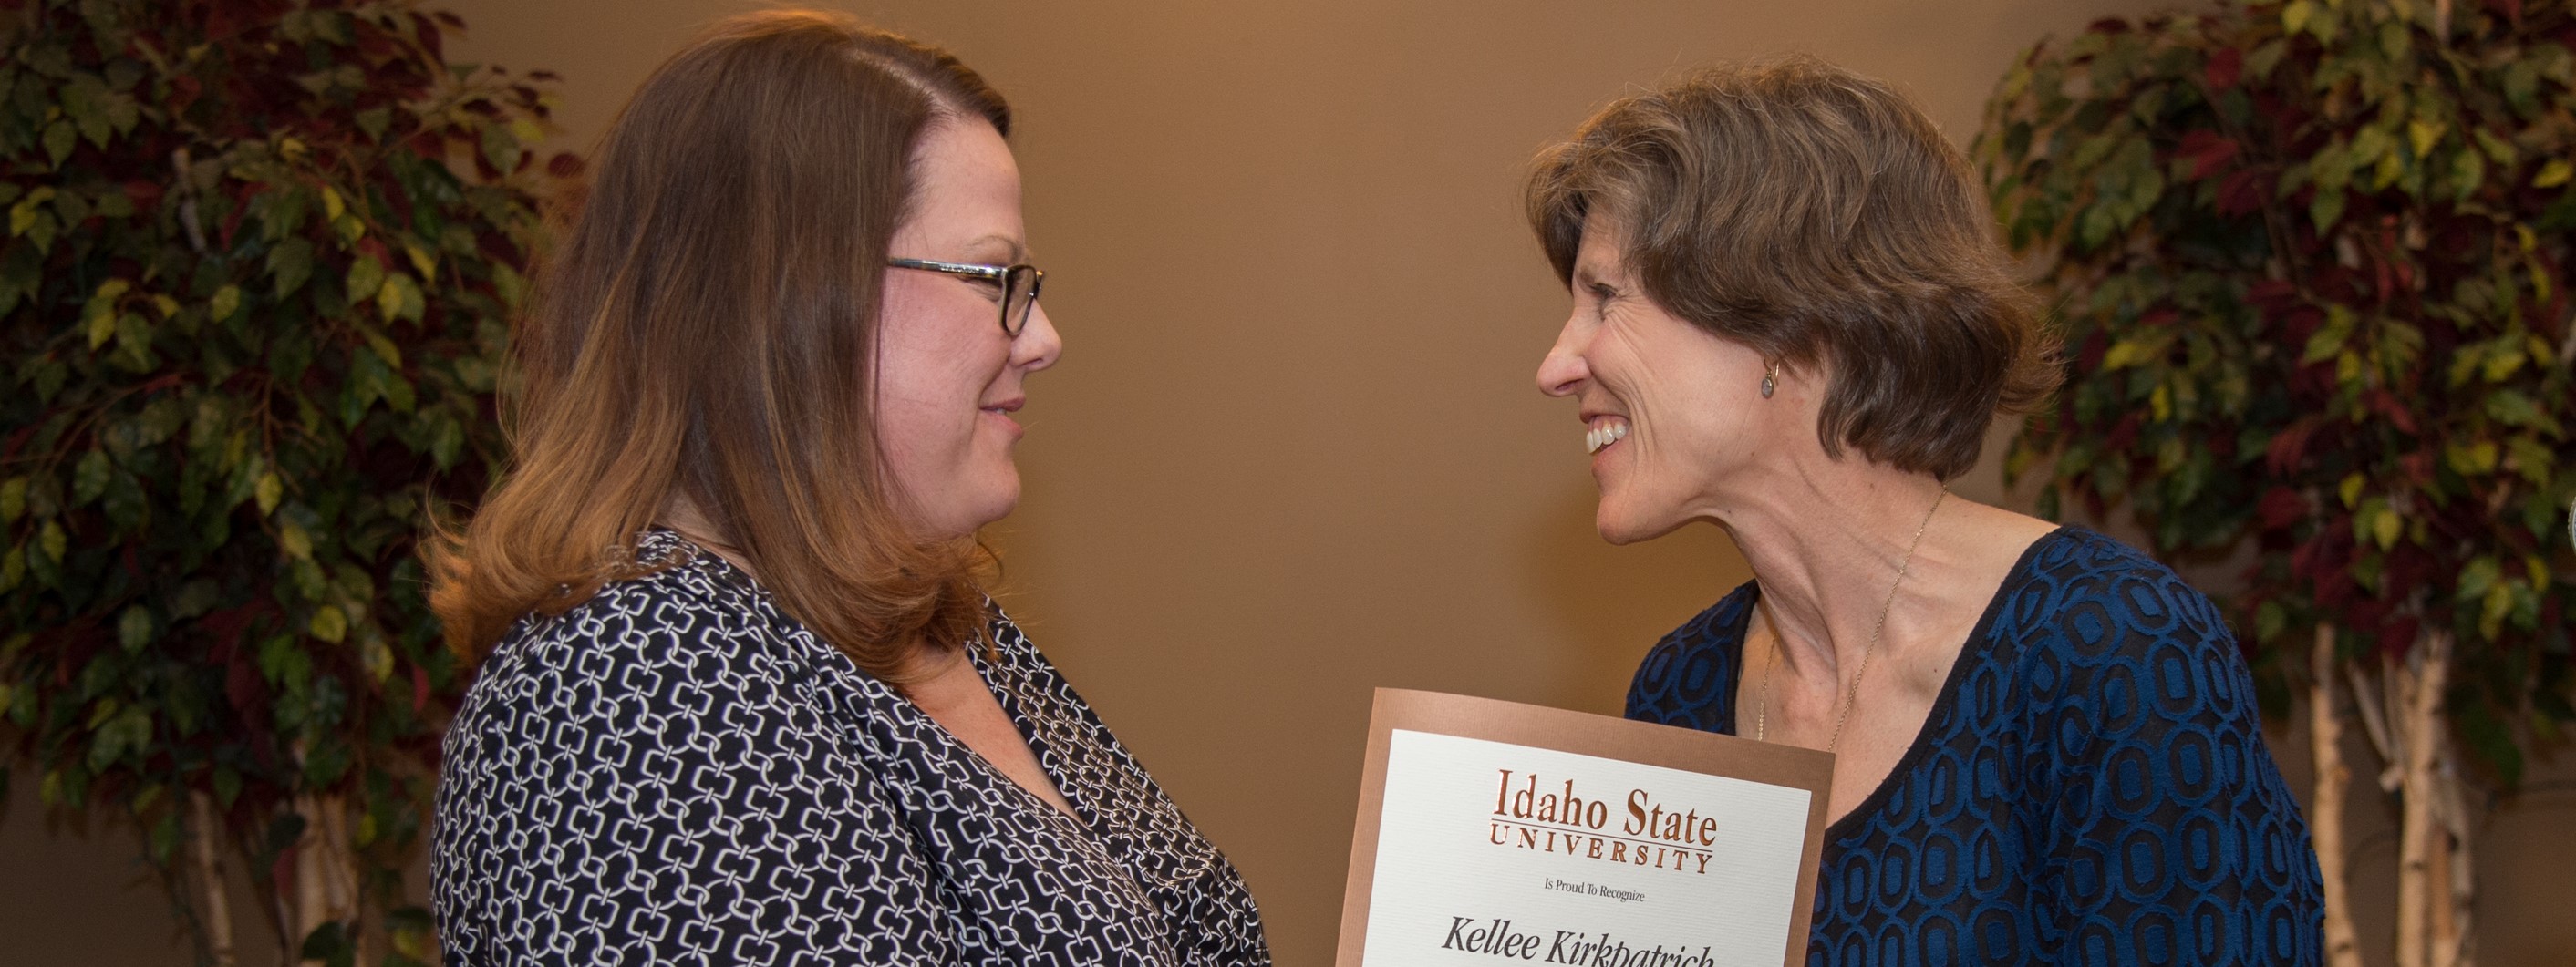 Kellee Kirkpatrick receiving a distinguished faculty award